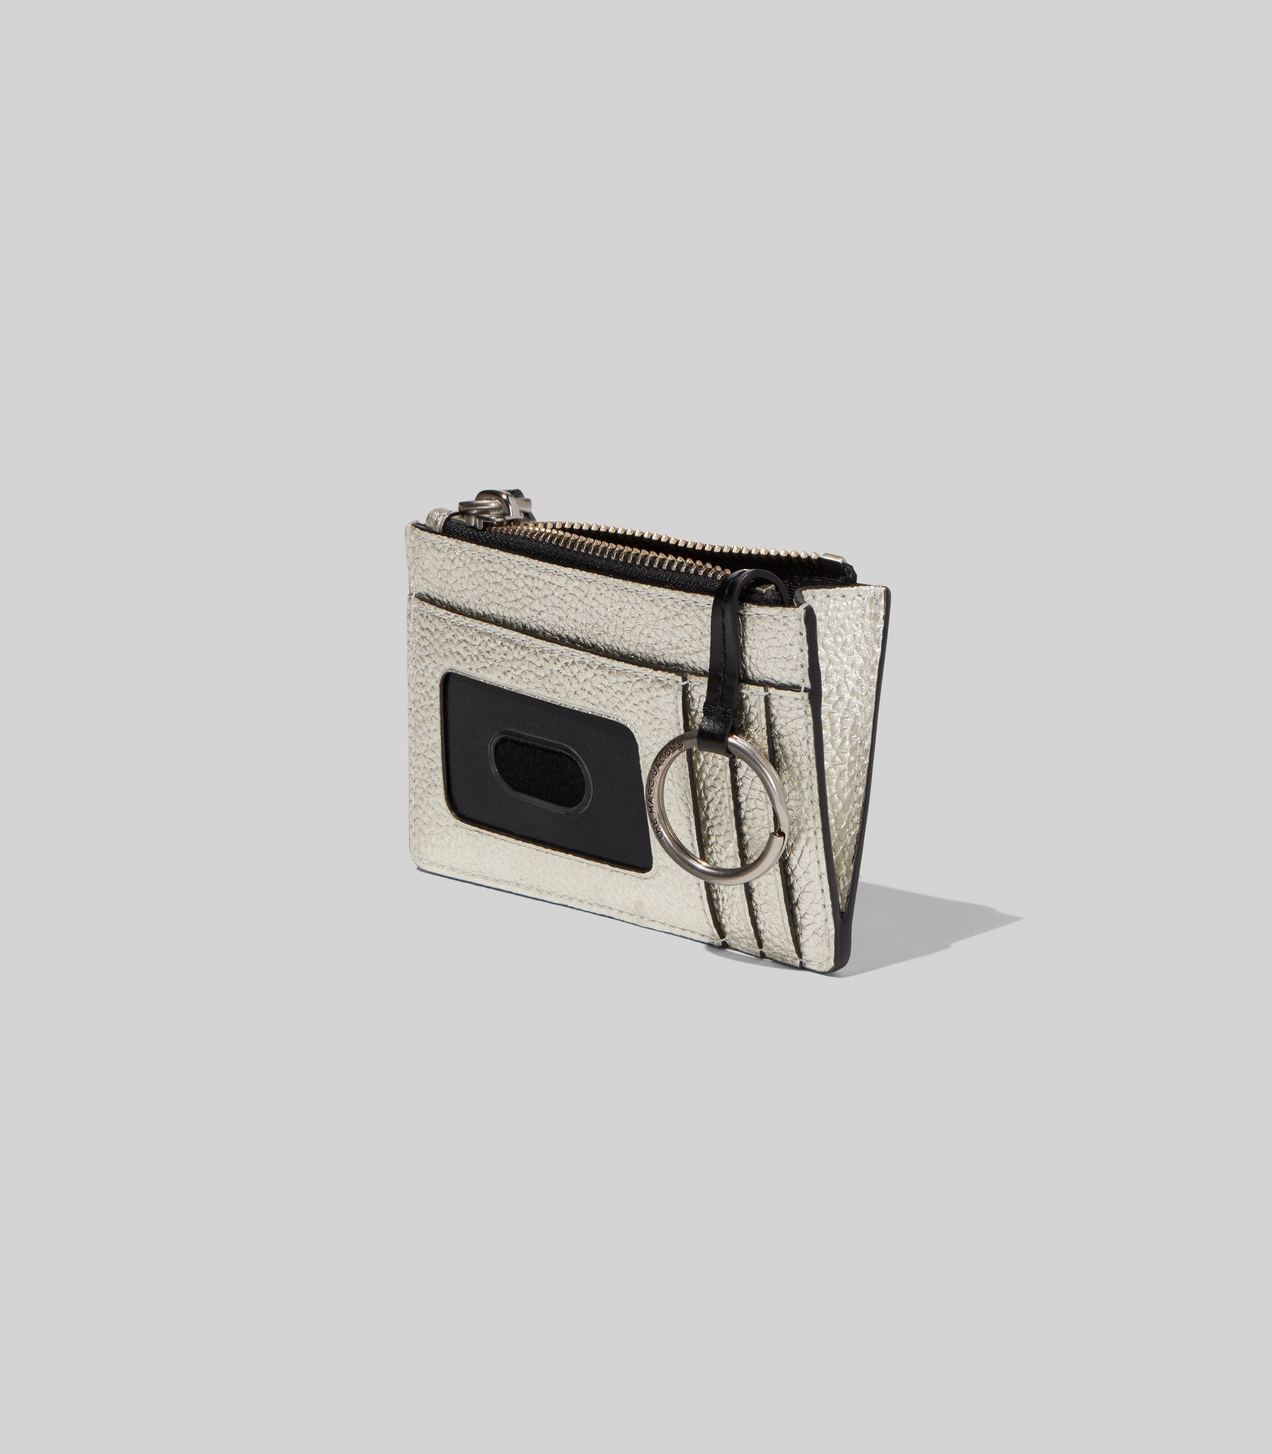 The Metallic Textured Box Top Zip Multi Wallet